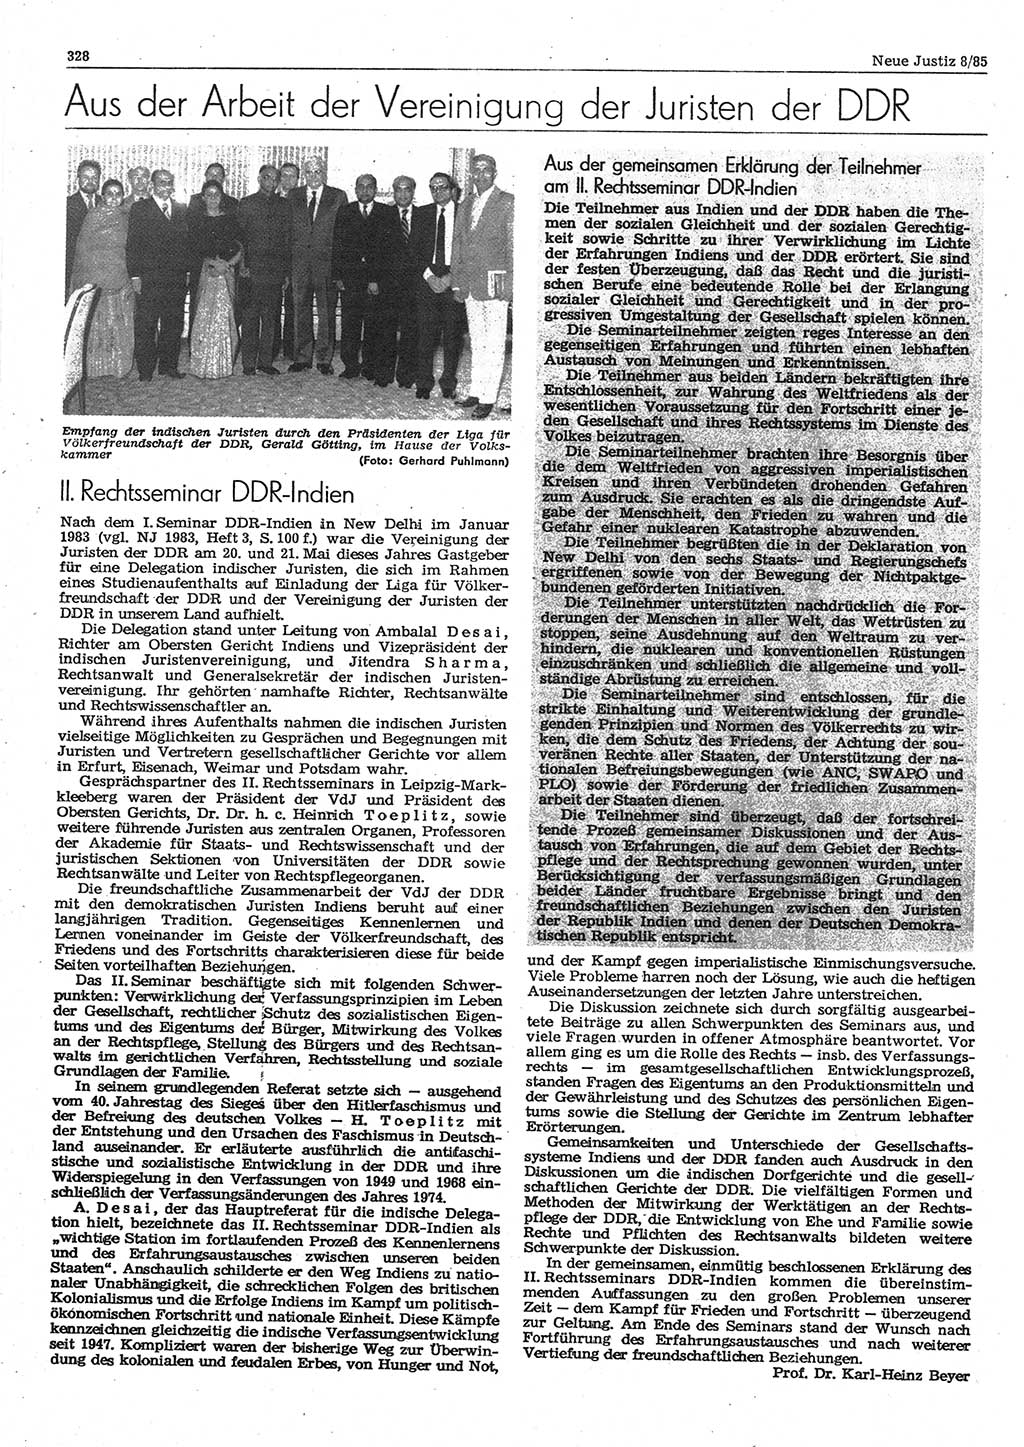 Neue Justiz (NJ), Zeitschrift für sozialistisches Recht und Gesetzlichkeit [Deutsche Demokratische Republik (DDR)], 39. Jahrgang 1985, Seite 328 (NJ DDR 1985, S. 328)